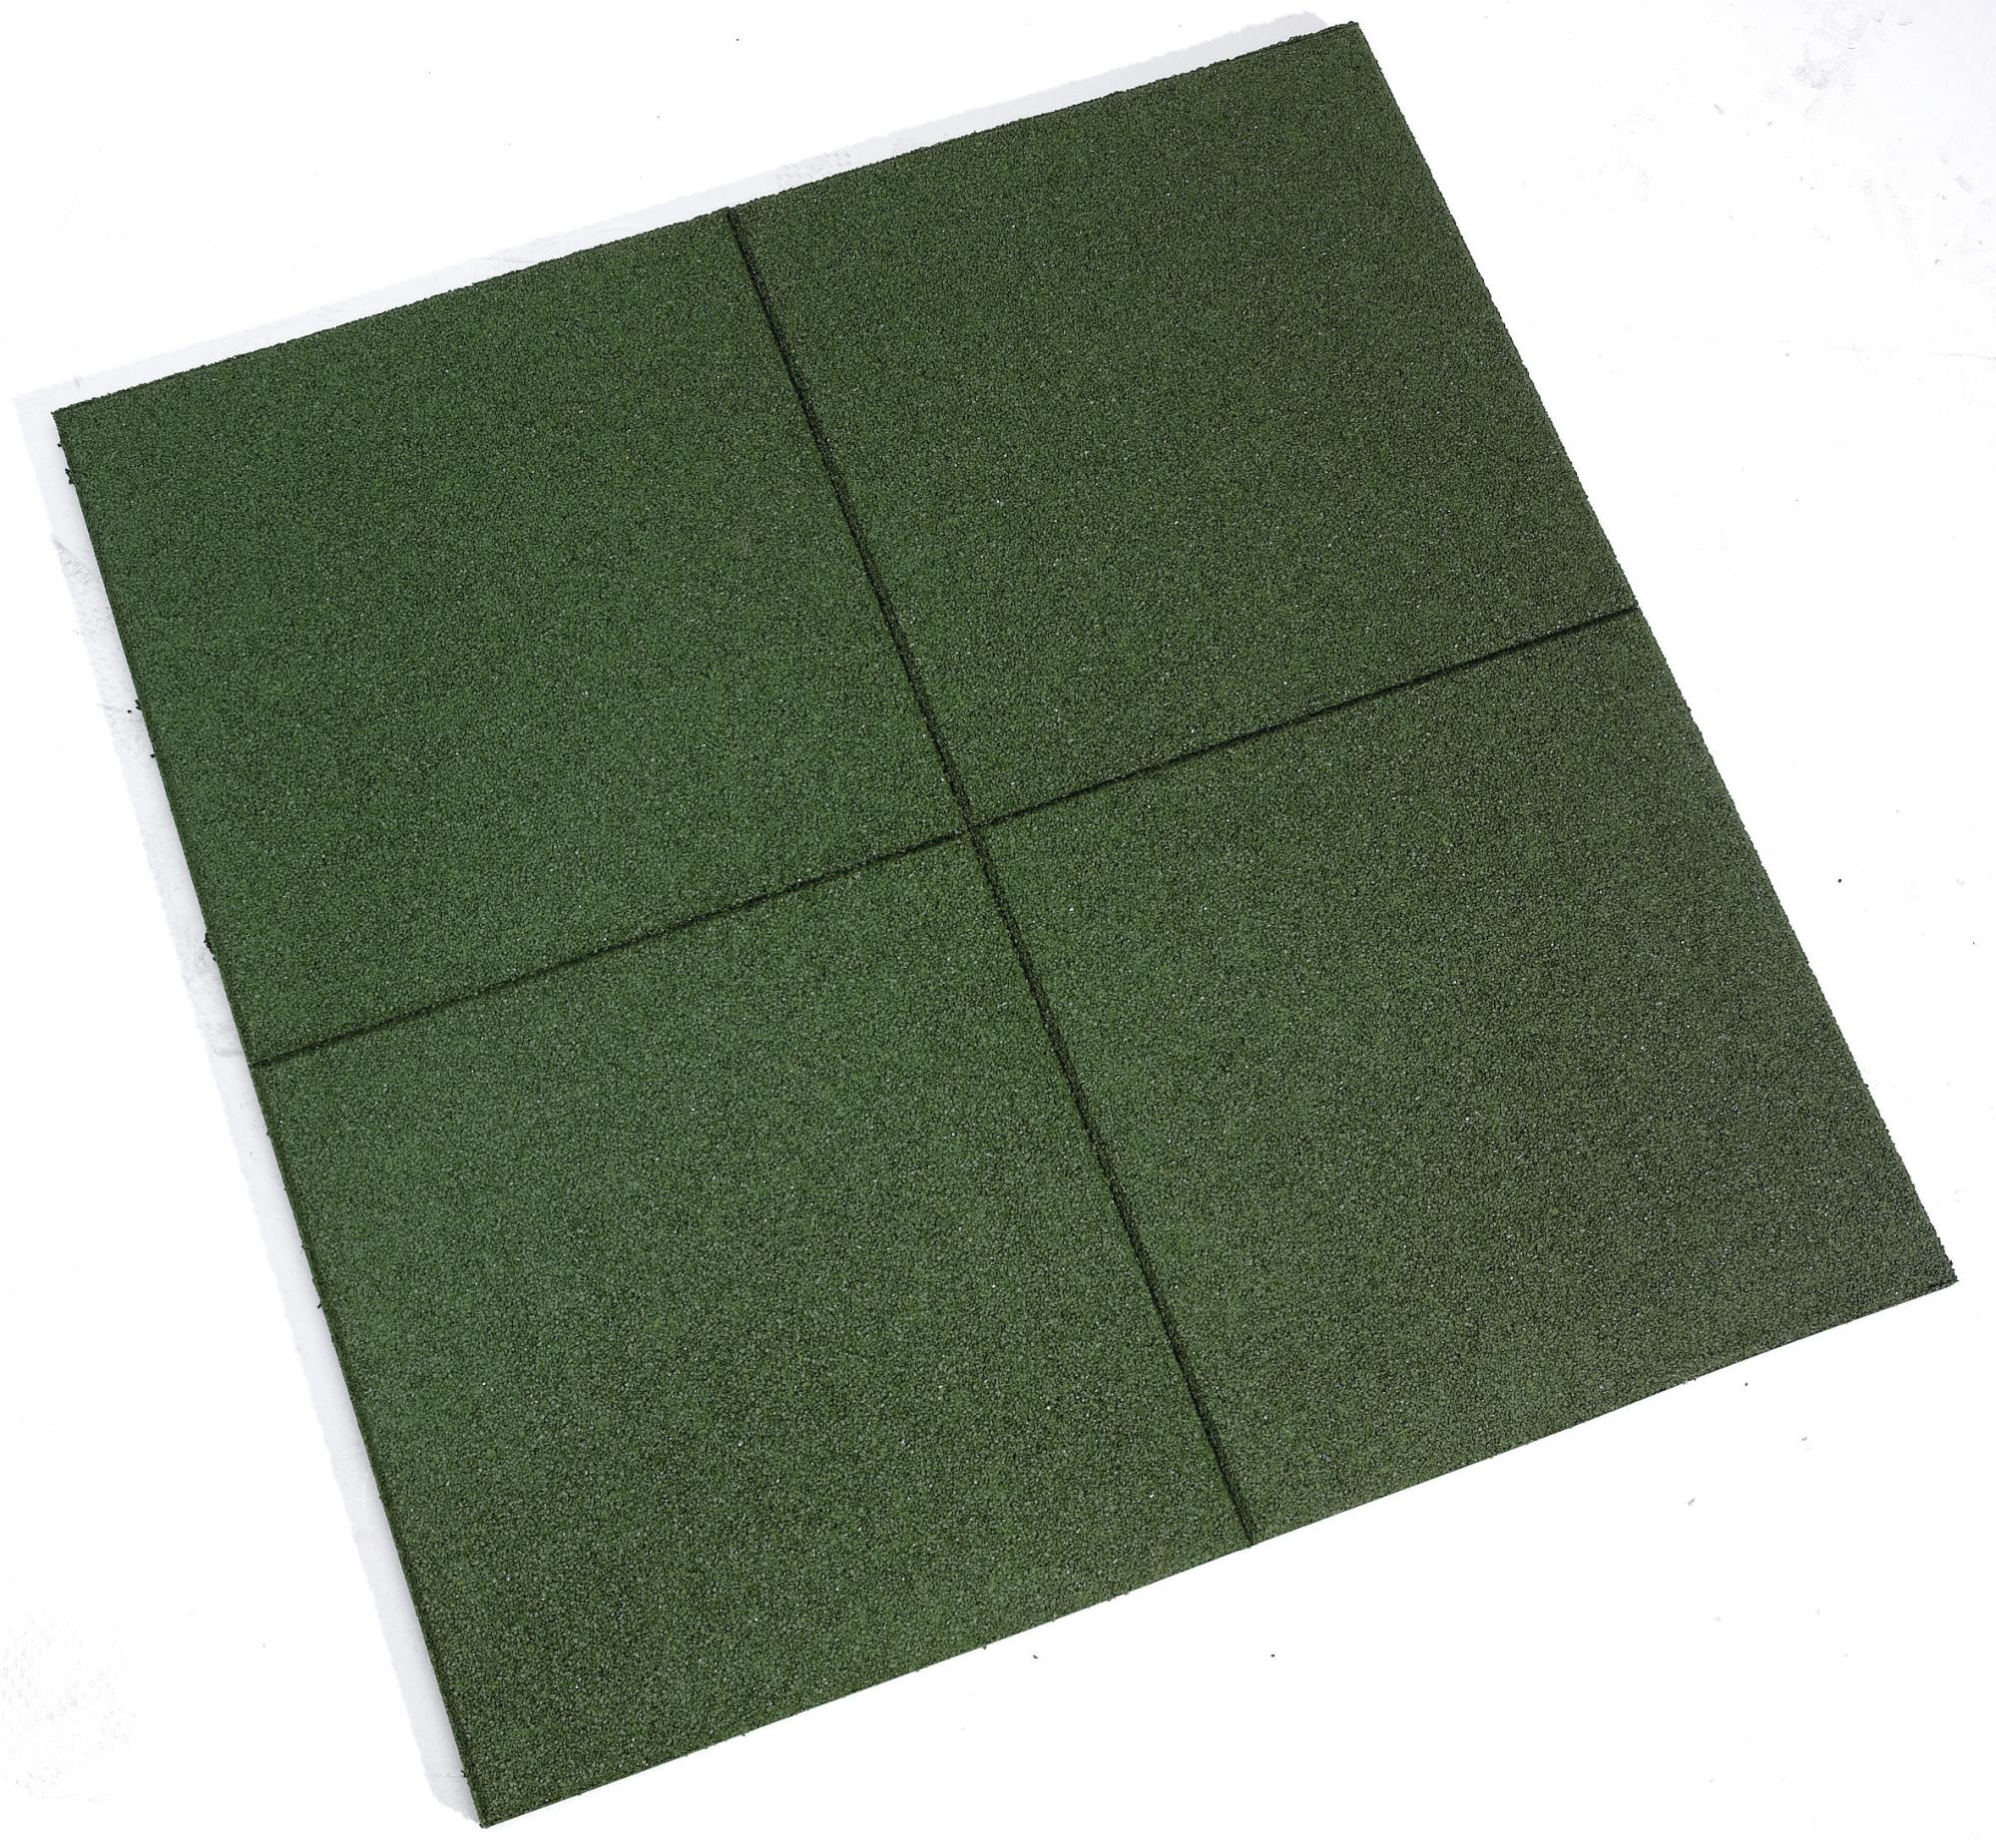 Dalle de sécurité caoutchouc, vert, L.100 x l.100 cm